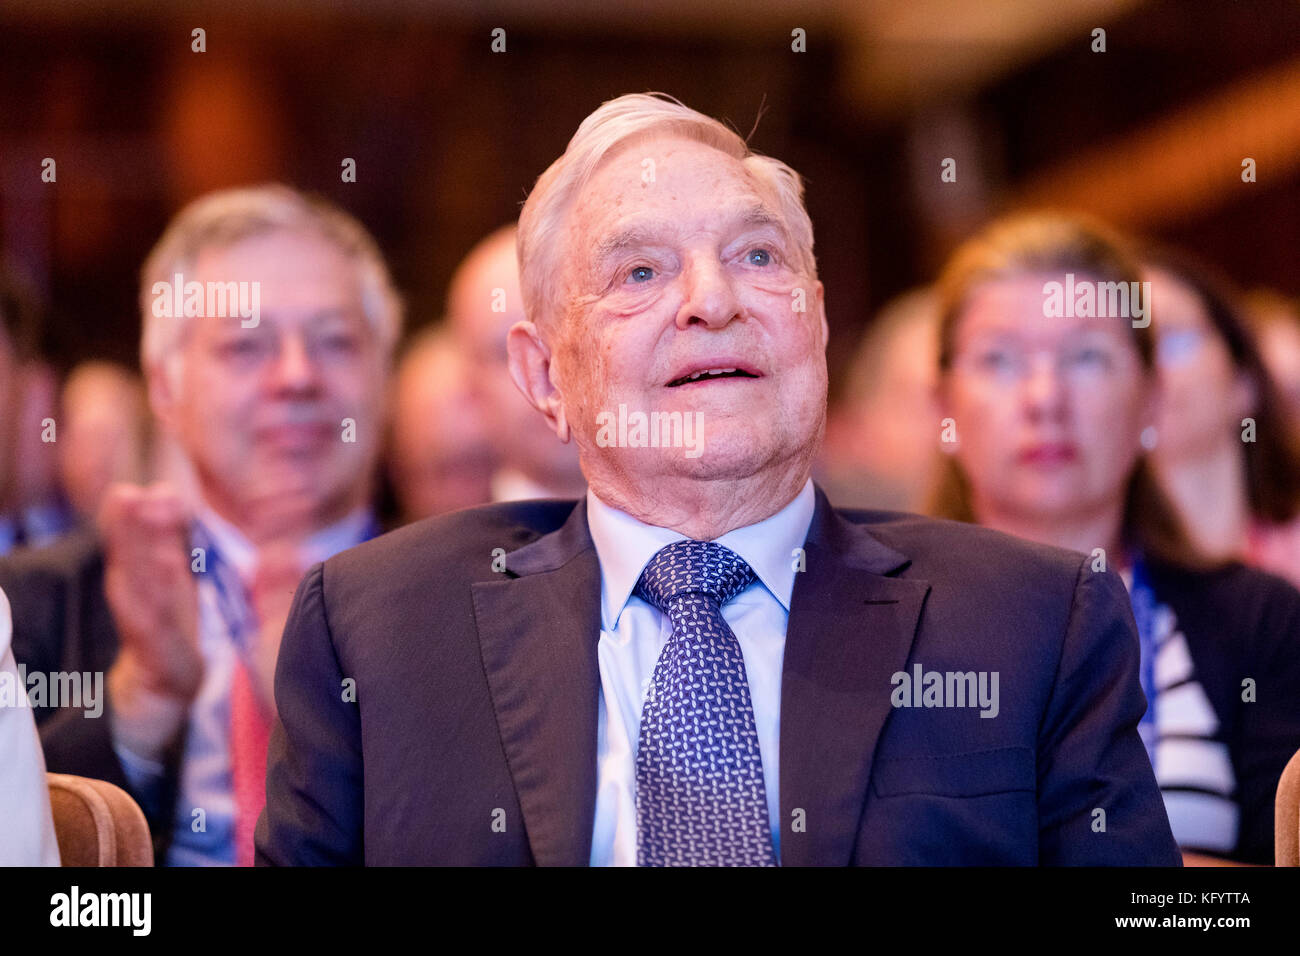 Belgien, Brüssel, am 2017/06/01: Der amerikanische Multimillionär George Soros an der Brüsseler Wirtschaftsforum 2017 Stockfoto